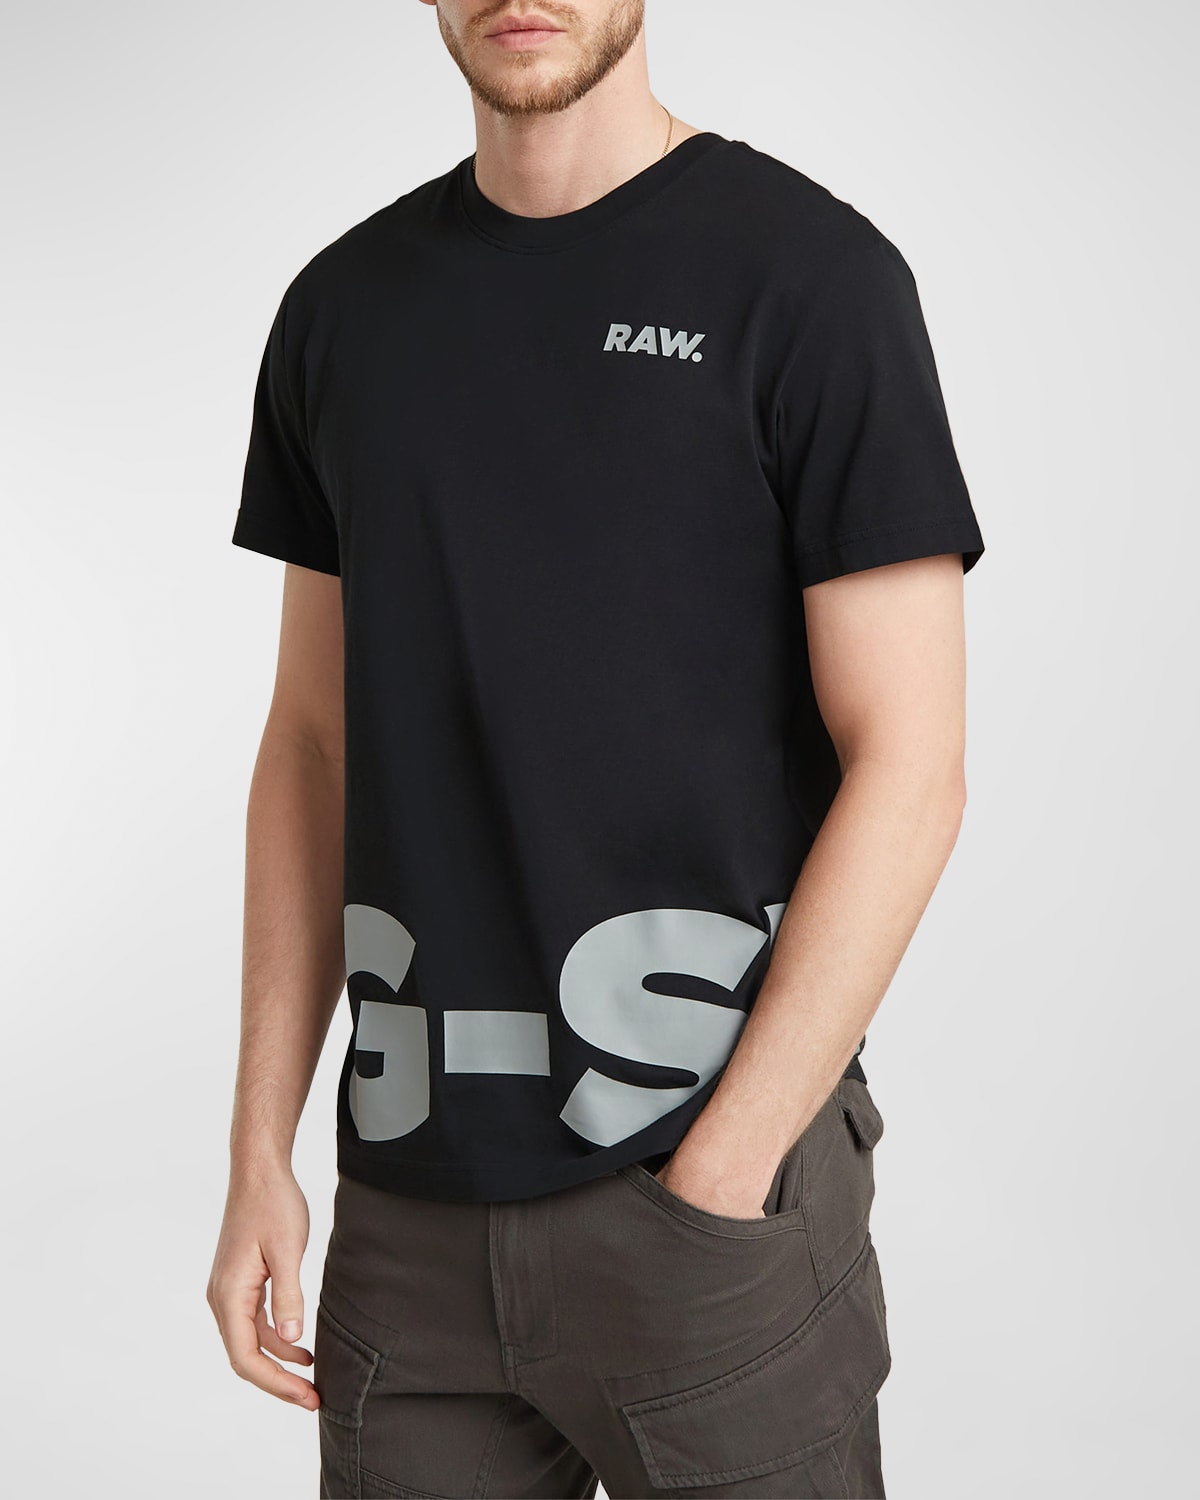 Men's Gig G T-Shirt